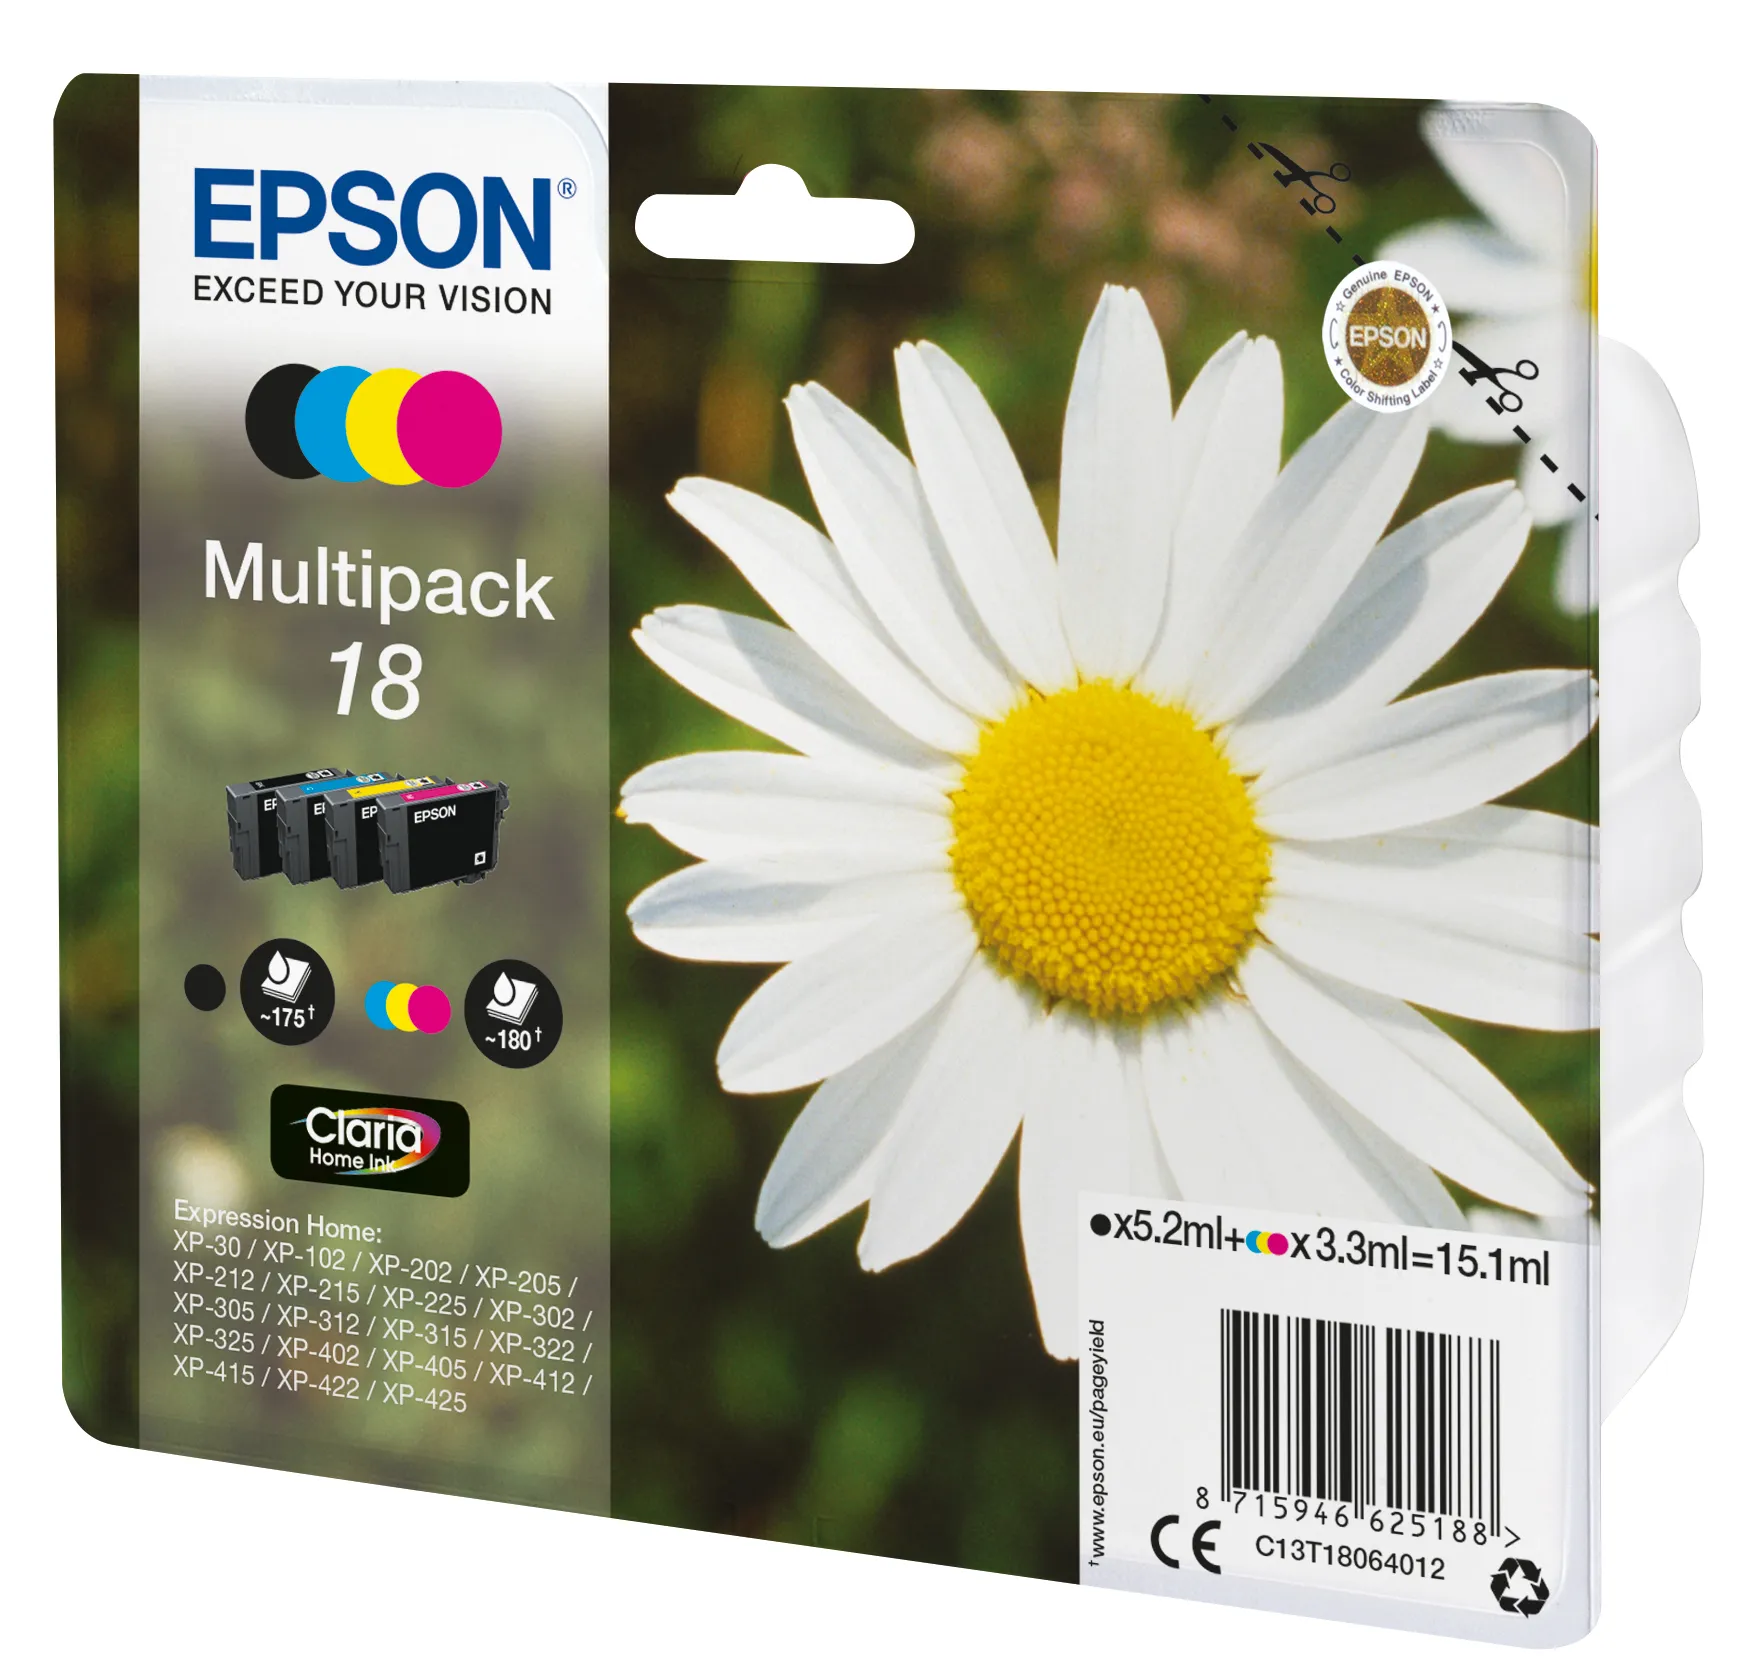 Vente EPSON 18 cartouche d encre noir et tricolore Epson au meilleur prix - visuel 4